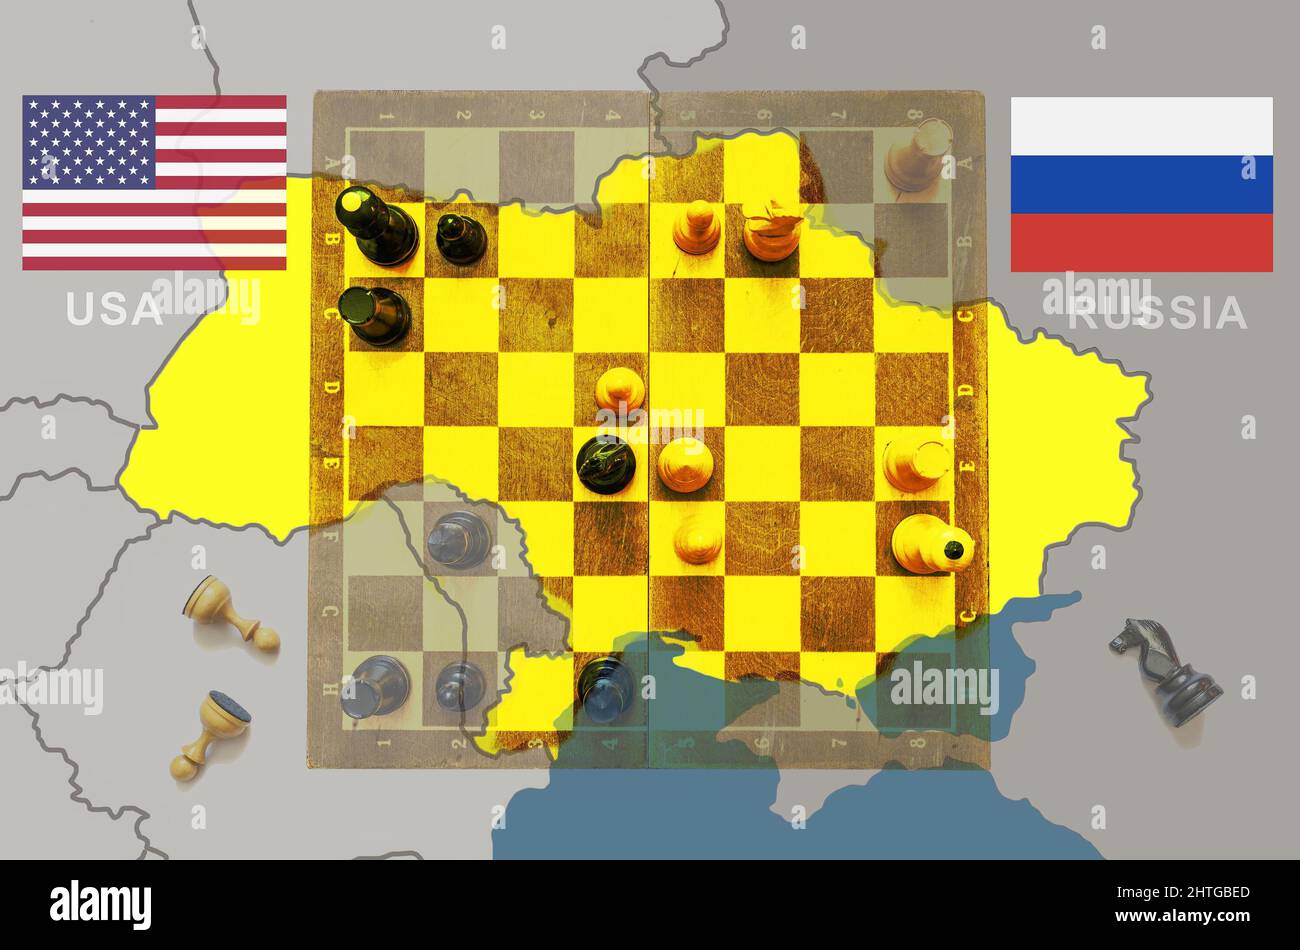 Russie vs États-Unis en Ukraine, jeu d'échecs comme la géopolitique. Échiquier et pièces sur la carte de l'Ukraine et de l'Europe. Concept de tension politique, guerre, crise, con Banque D'Images